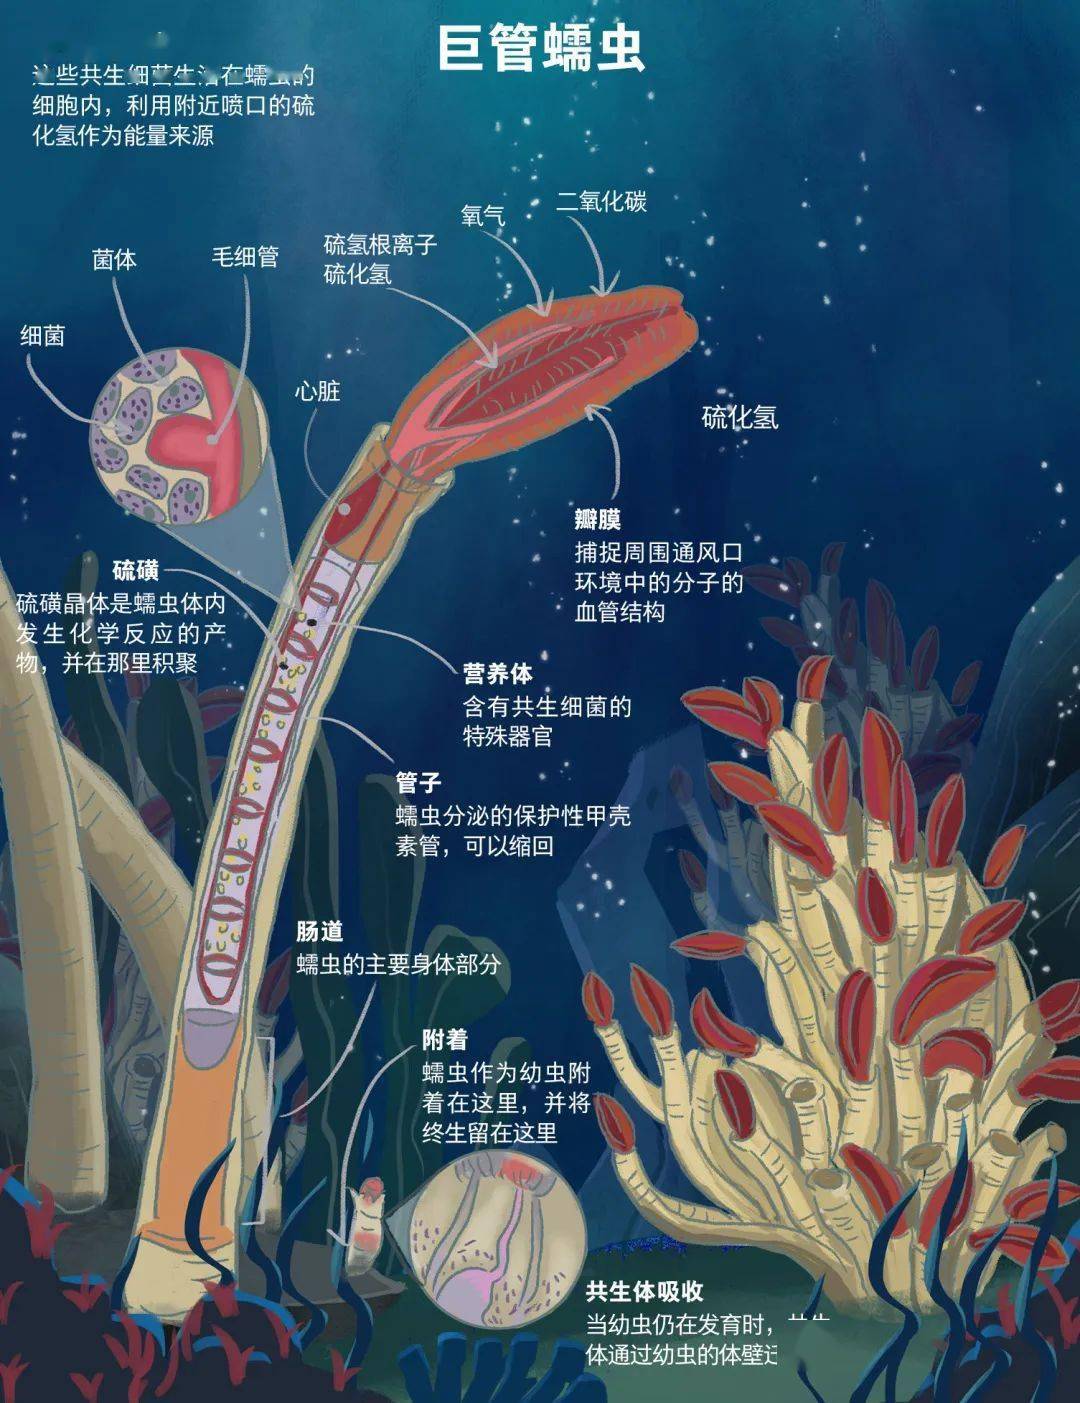 海葵结构图片